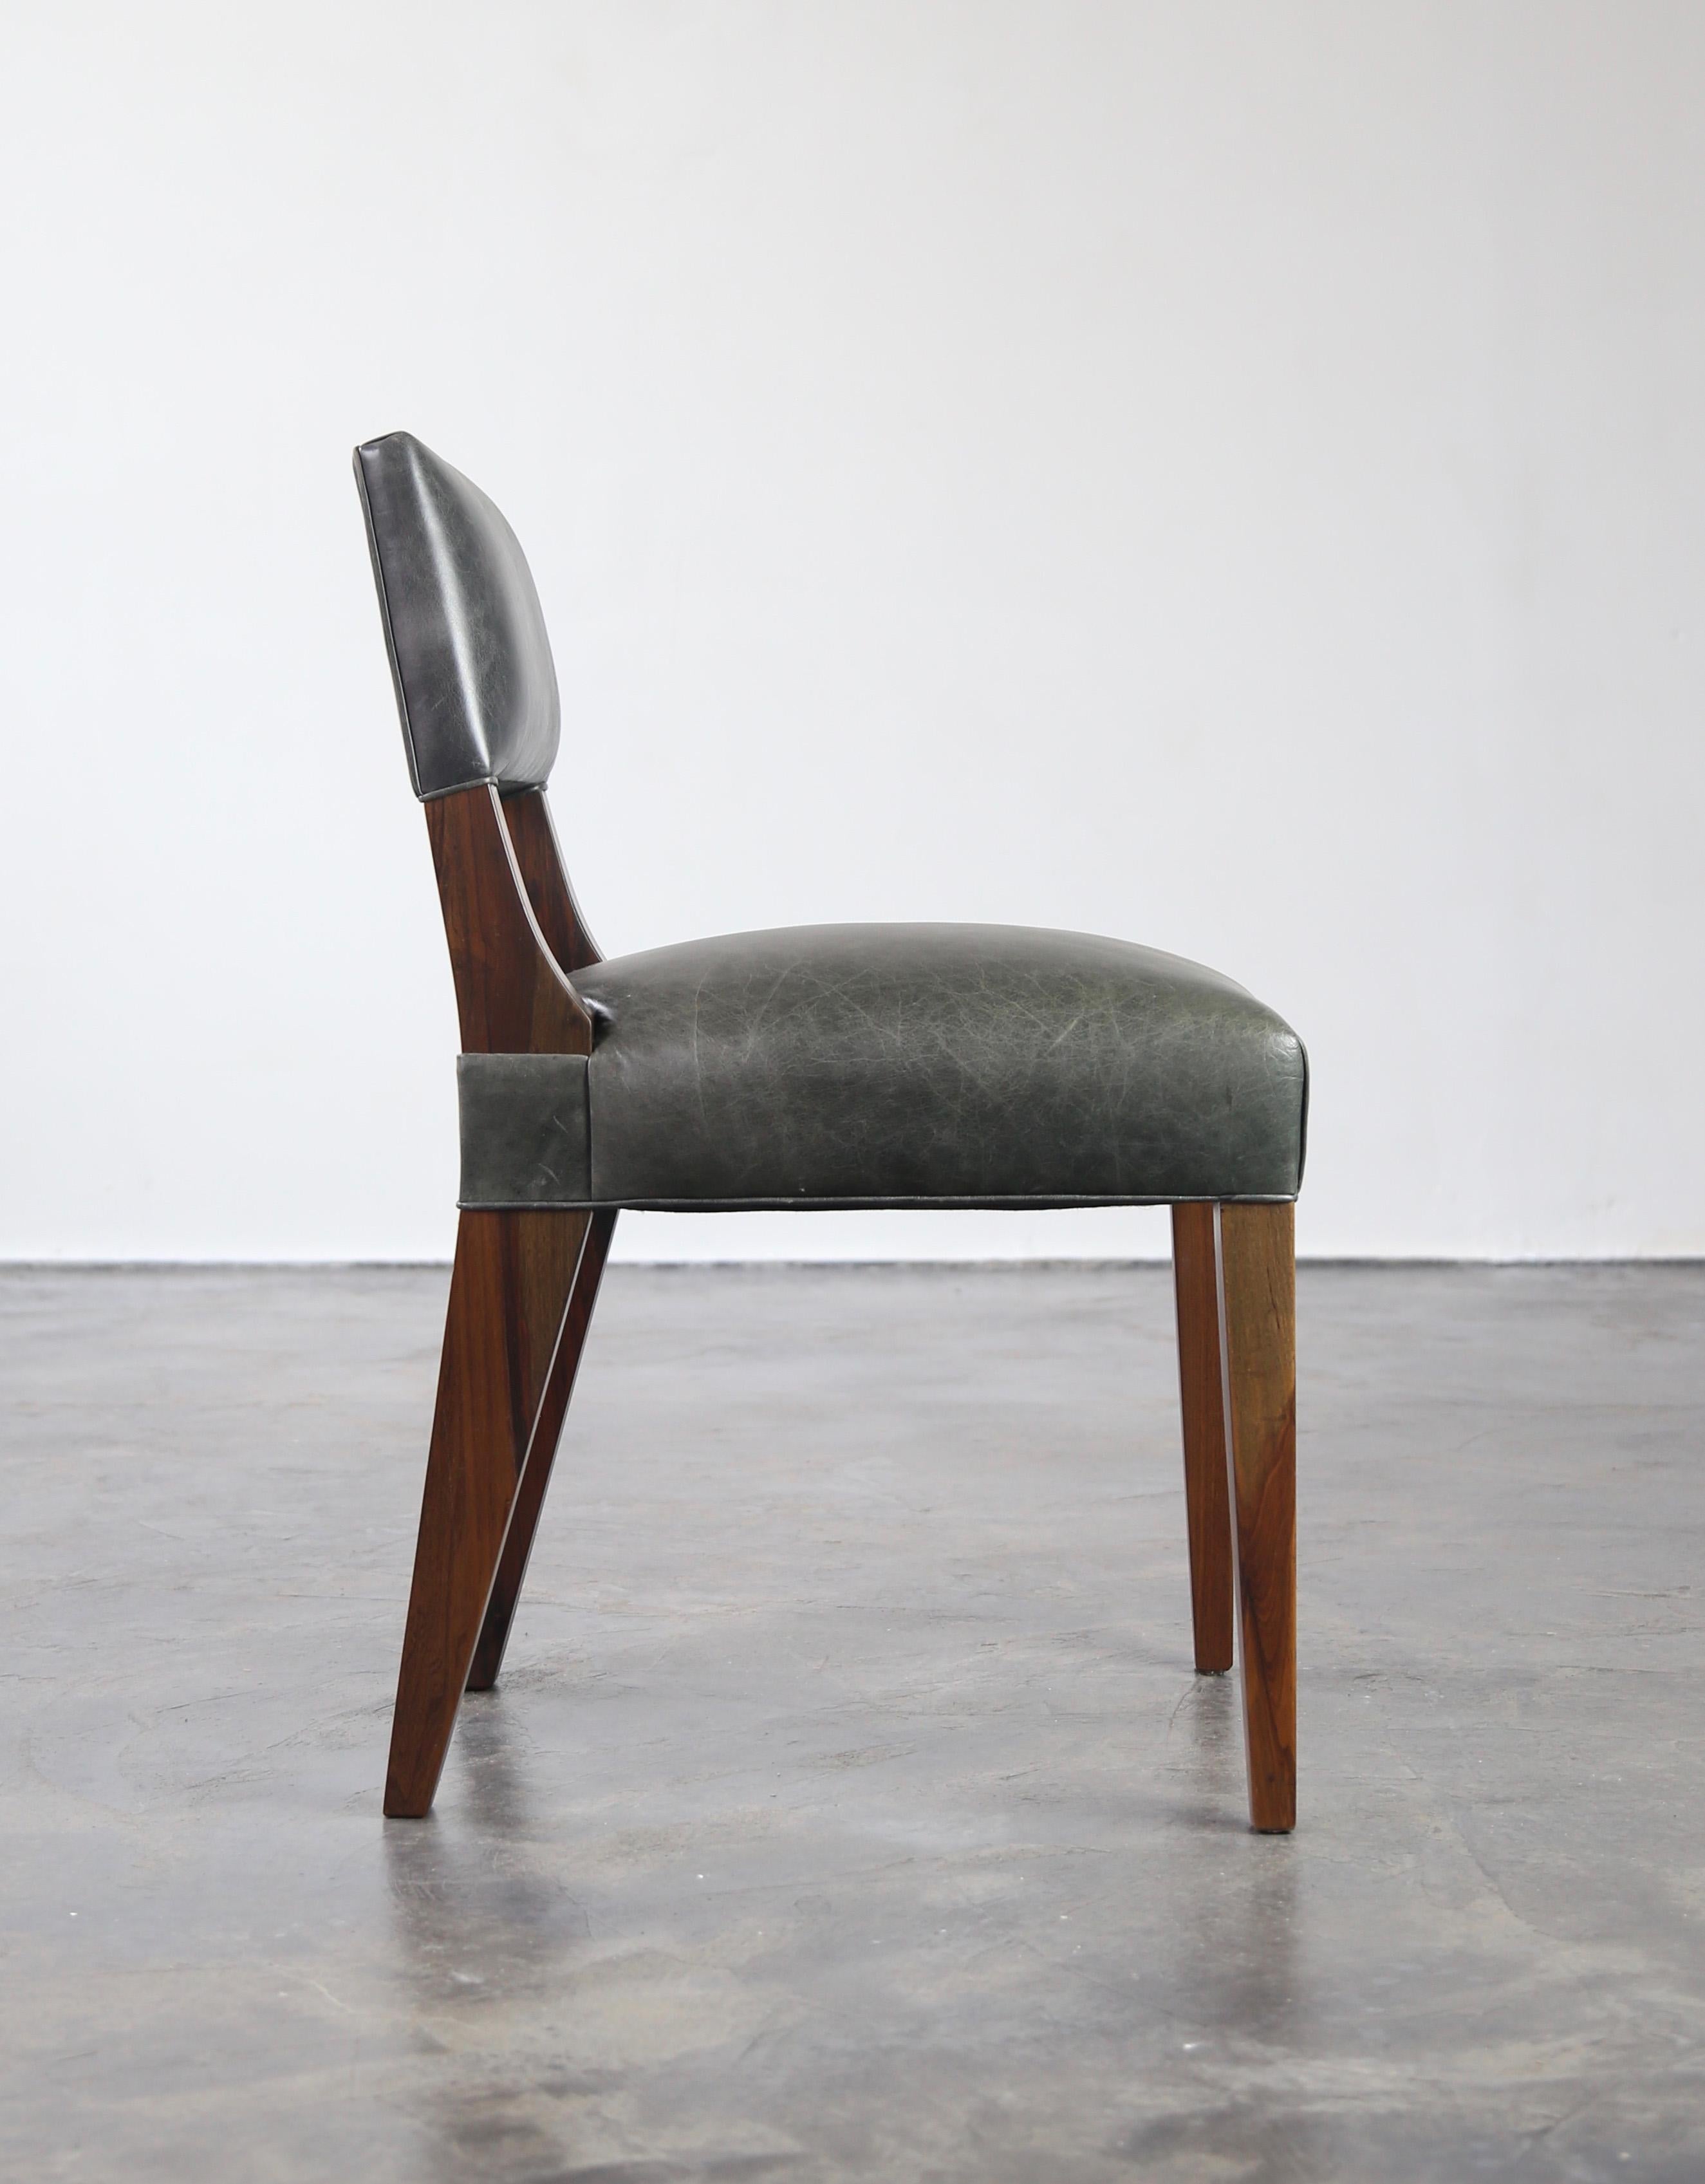 Der Bruno ist ein typischer Costantini-Stuhl mit einer flachen, ergonomisch geformten Rückenlehne. Erhältlich wie abgebildet in argentinischem Palisander und Leder oder in individuellen Materialien, Ausführungen und dem Polstermaterial Ihrer Wahl.